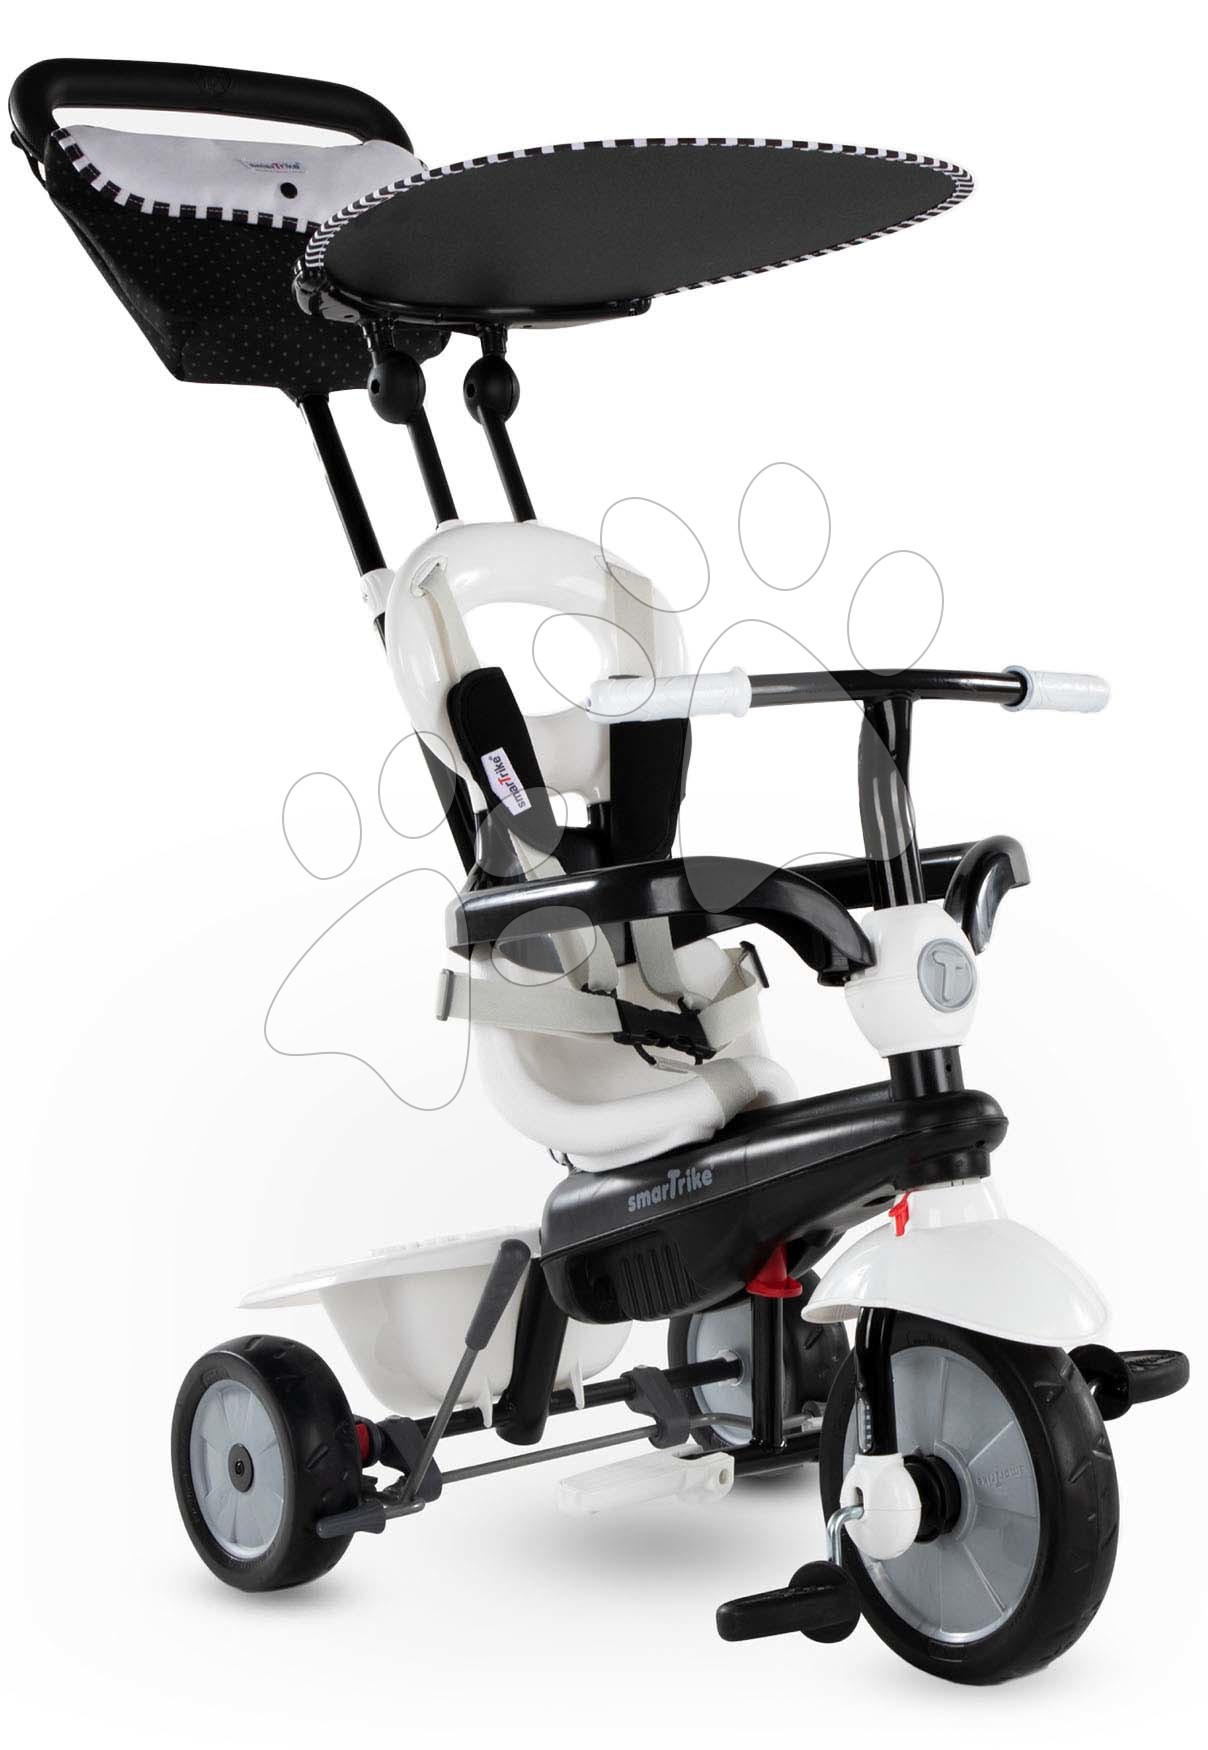 Tricikli za djecu od 10 mjeseci - Tricikl Vanilla DLX smaTrike TouchSteering upravljanje sa suncobranom i torbom, crno-bijeli od 10 mjes